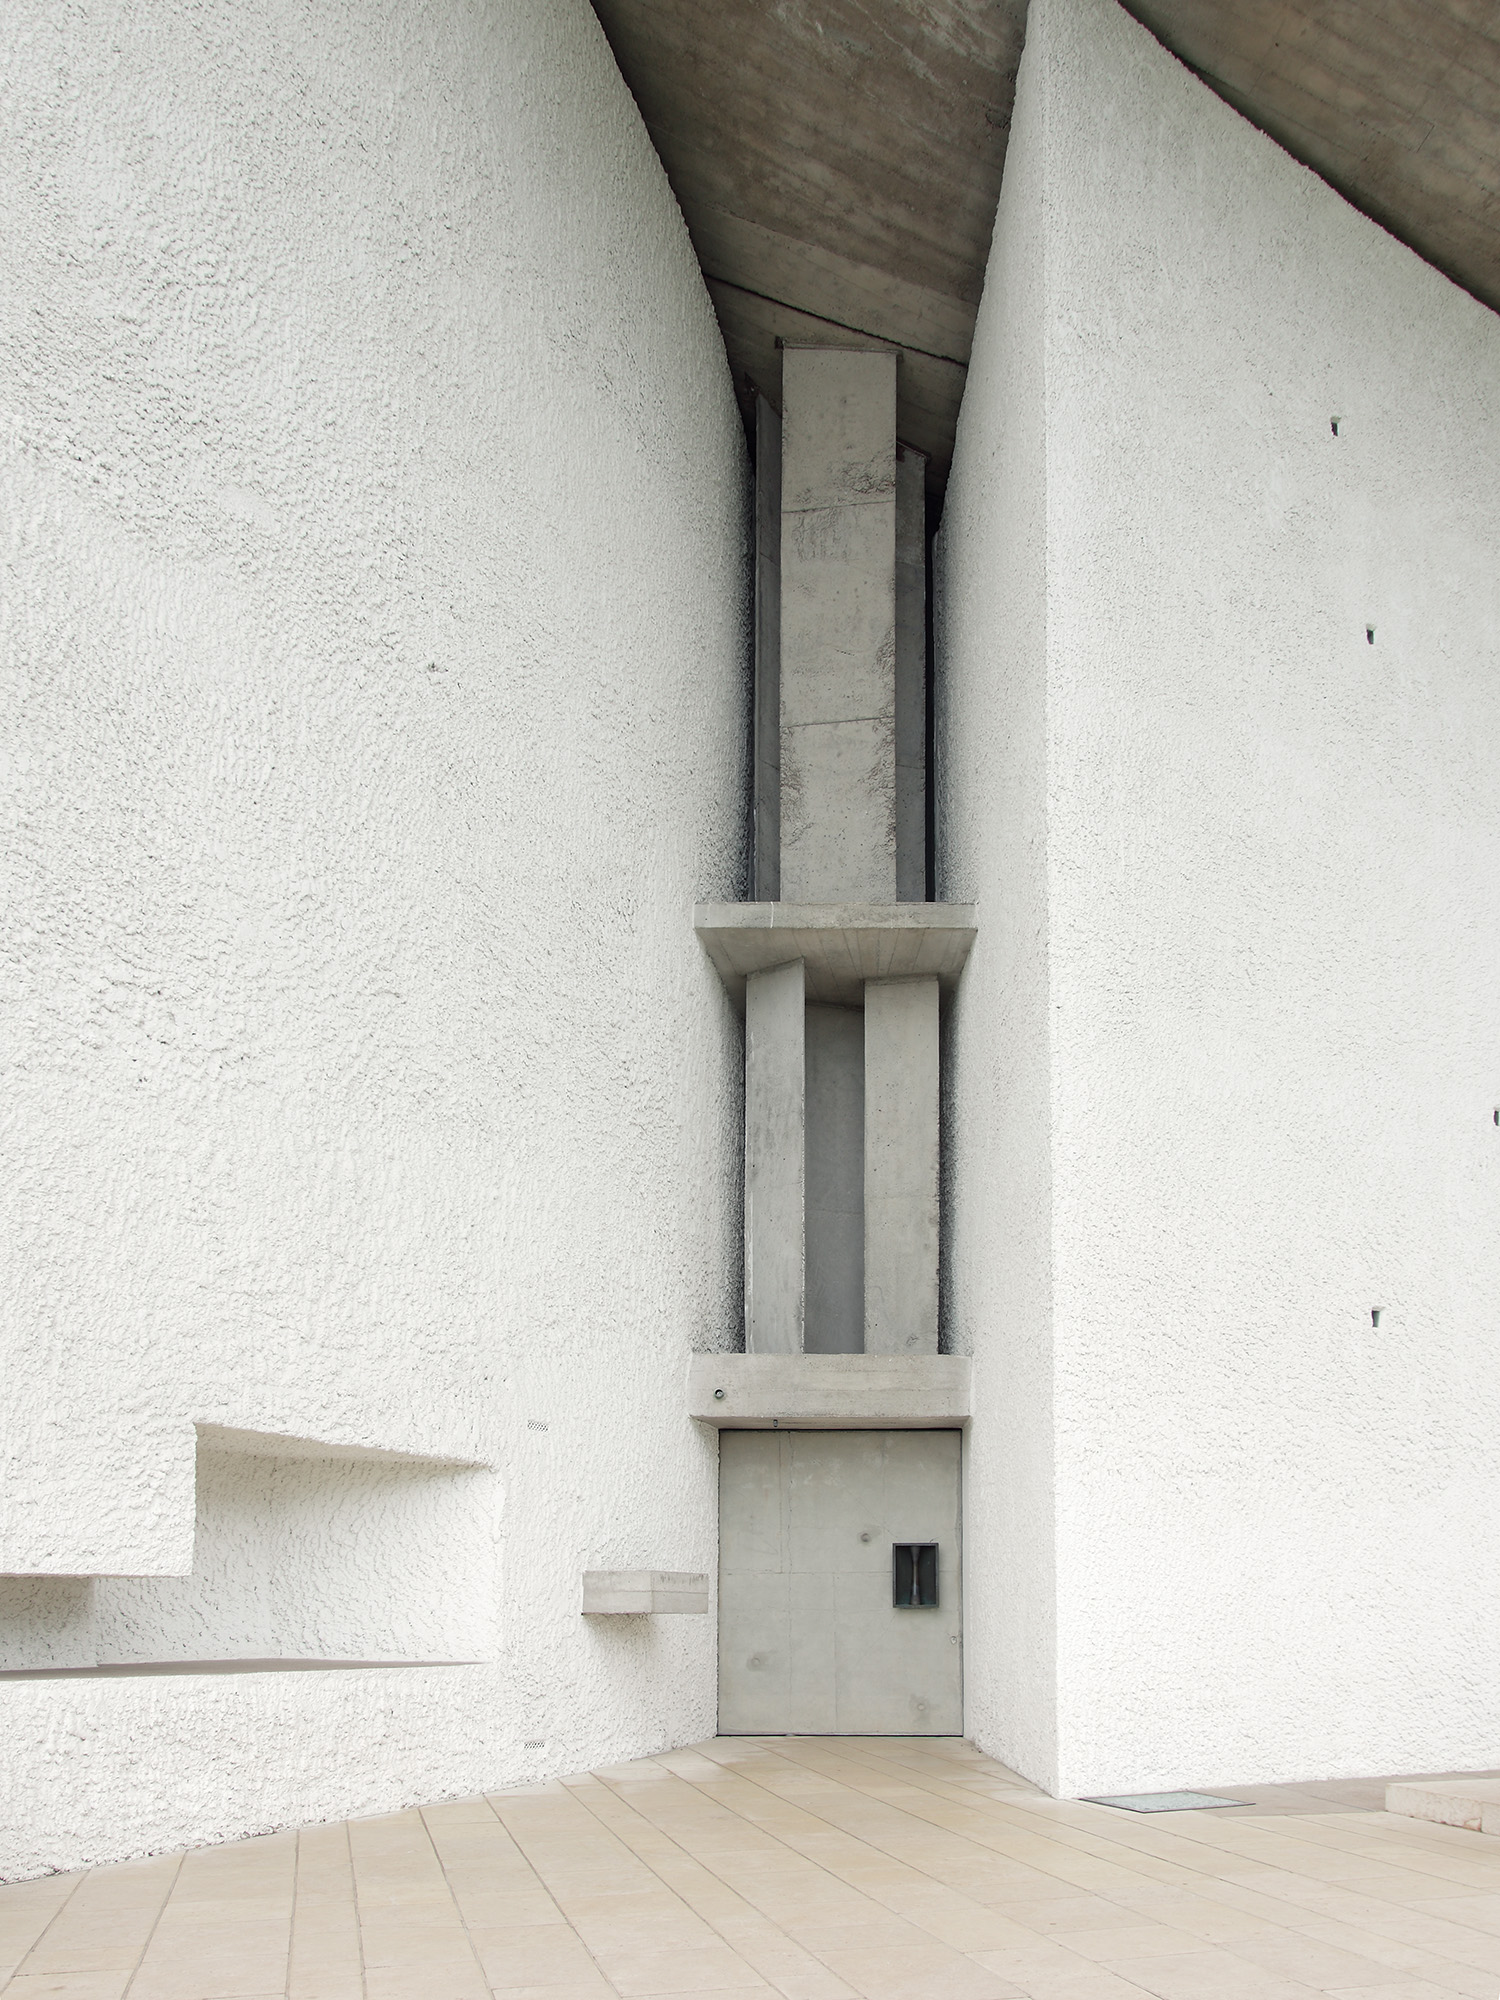 Notre Dame de Haut
Le Corbusier, 1955
Ronchamp